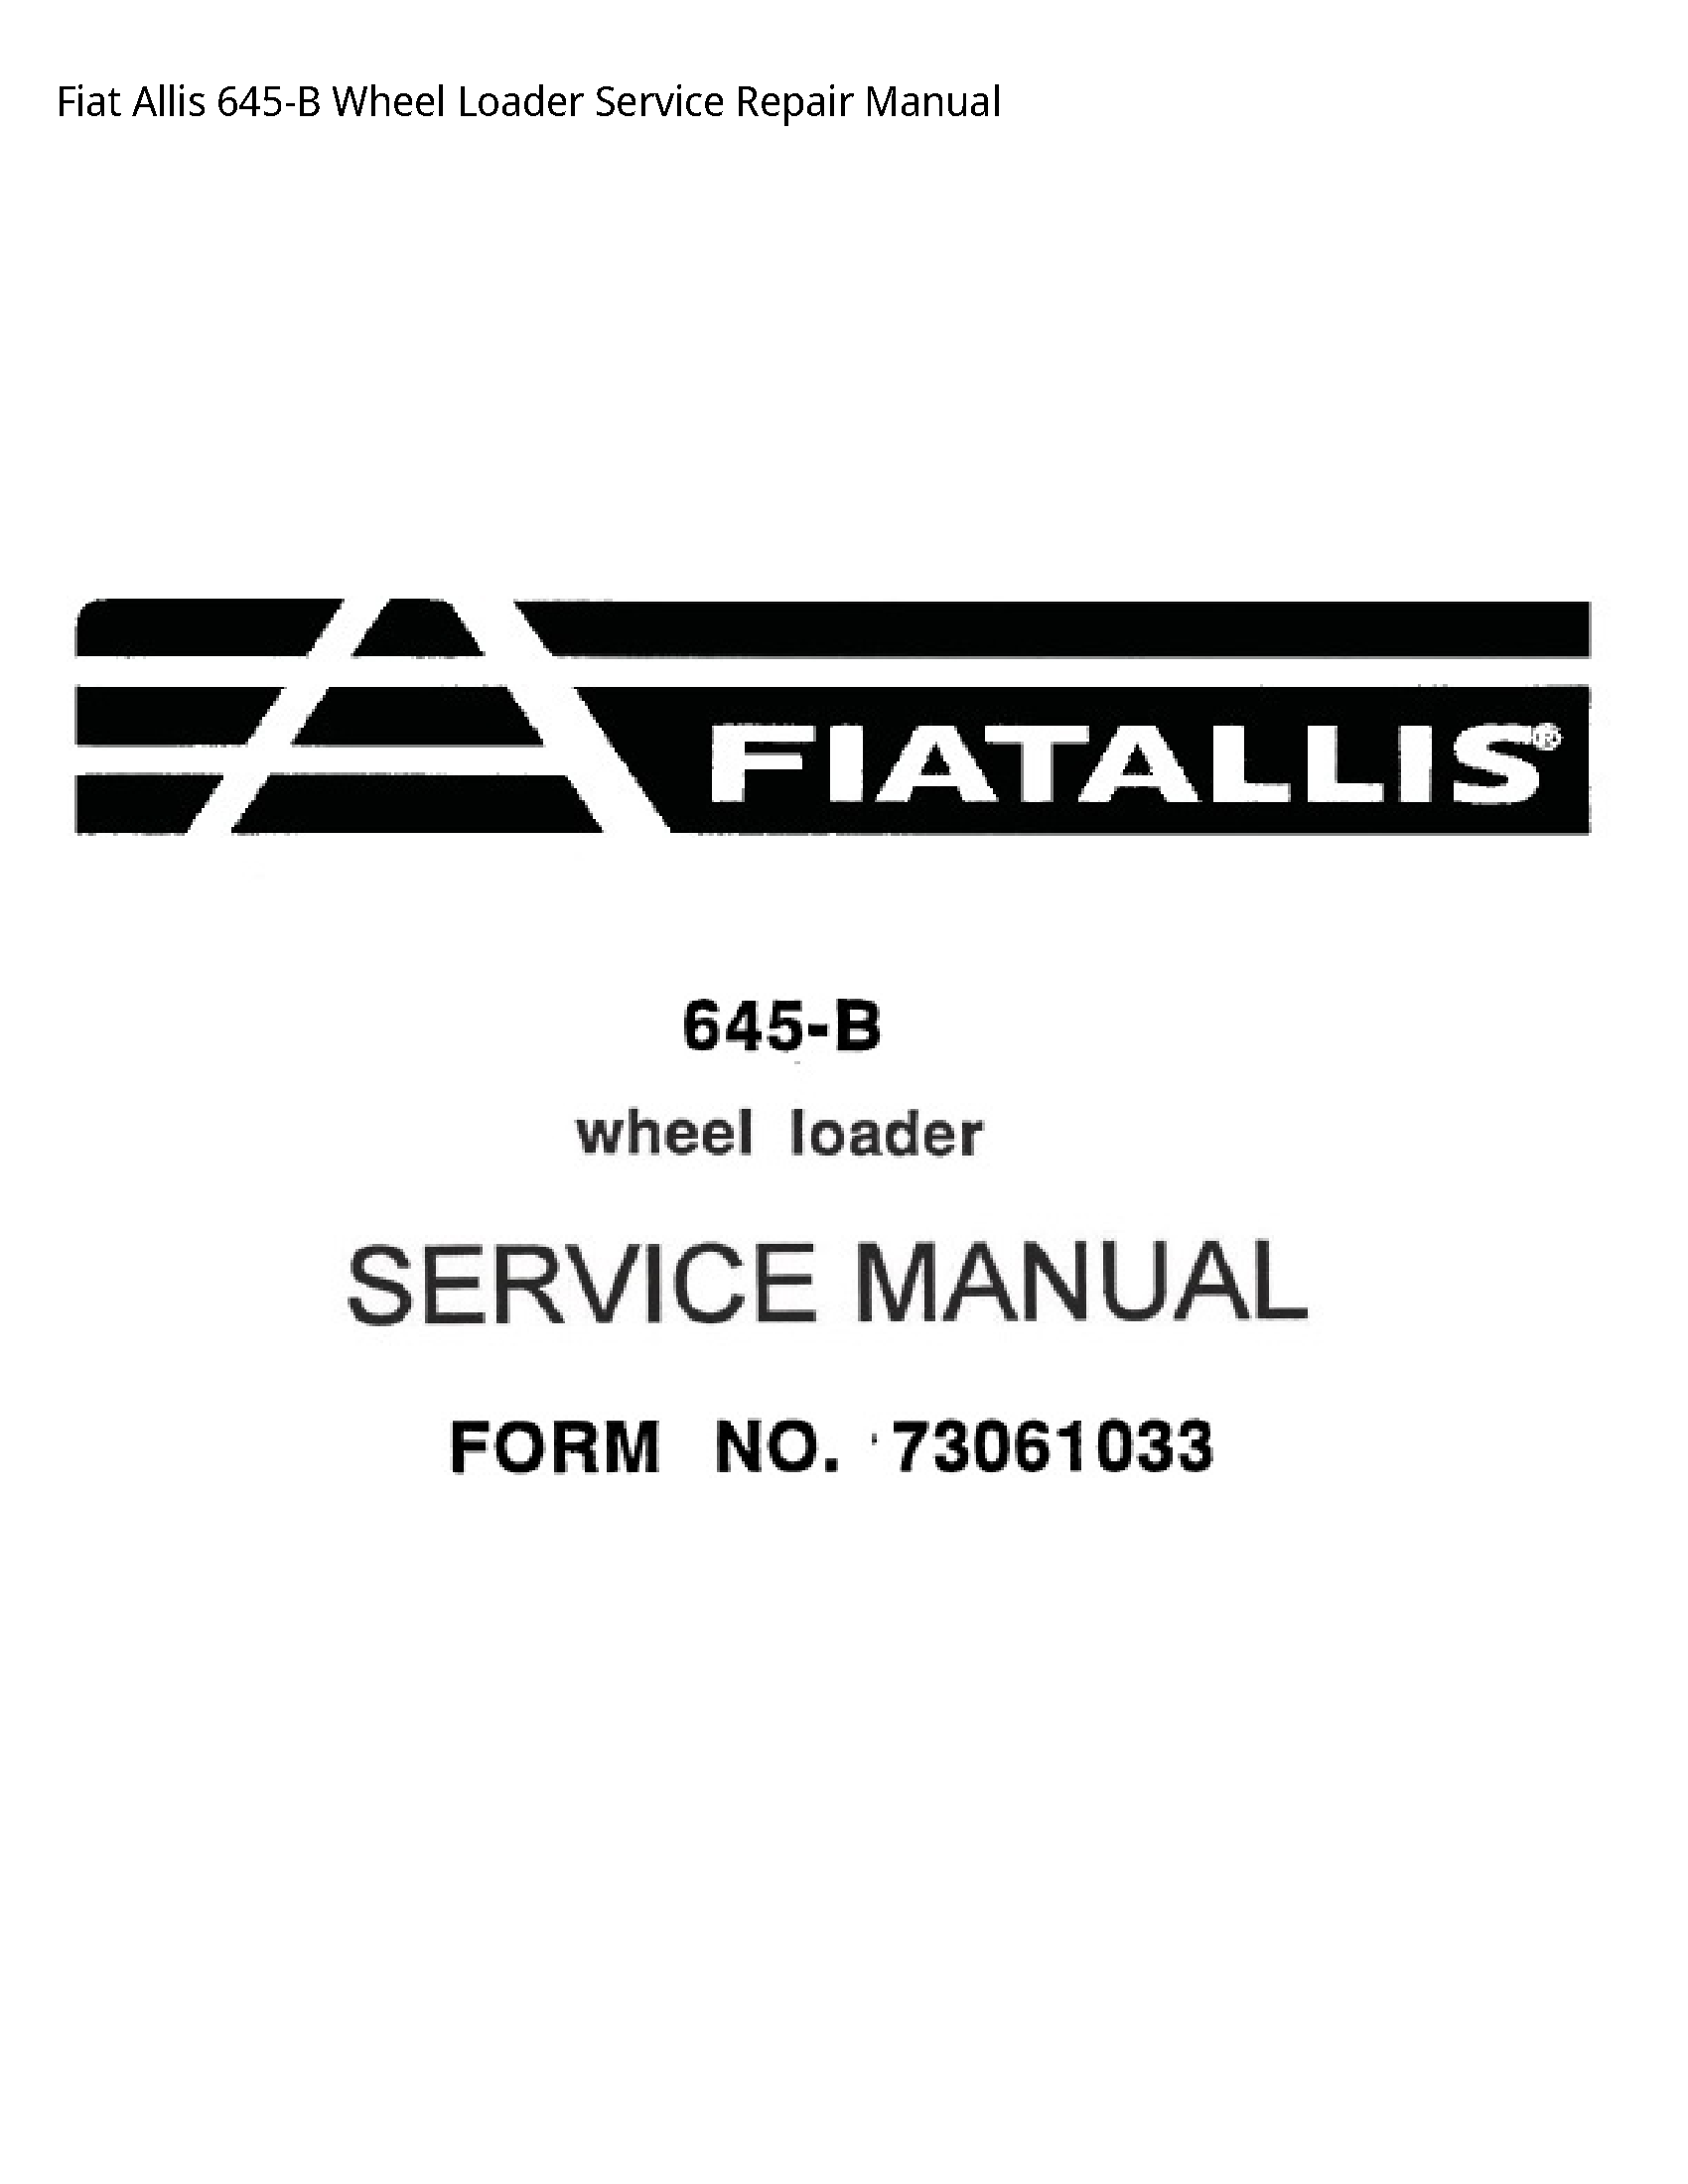 Fiat Allis 645-B Wheel Loader manual